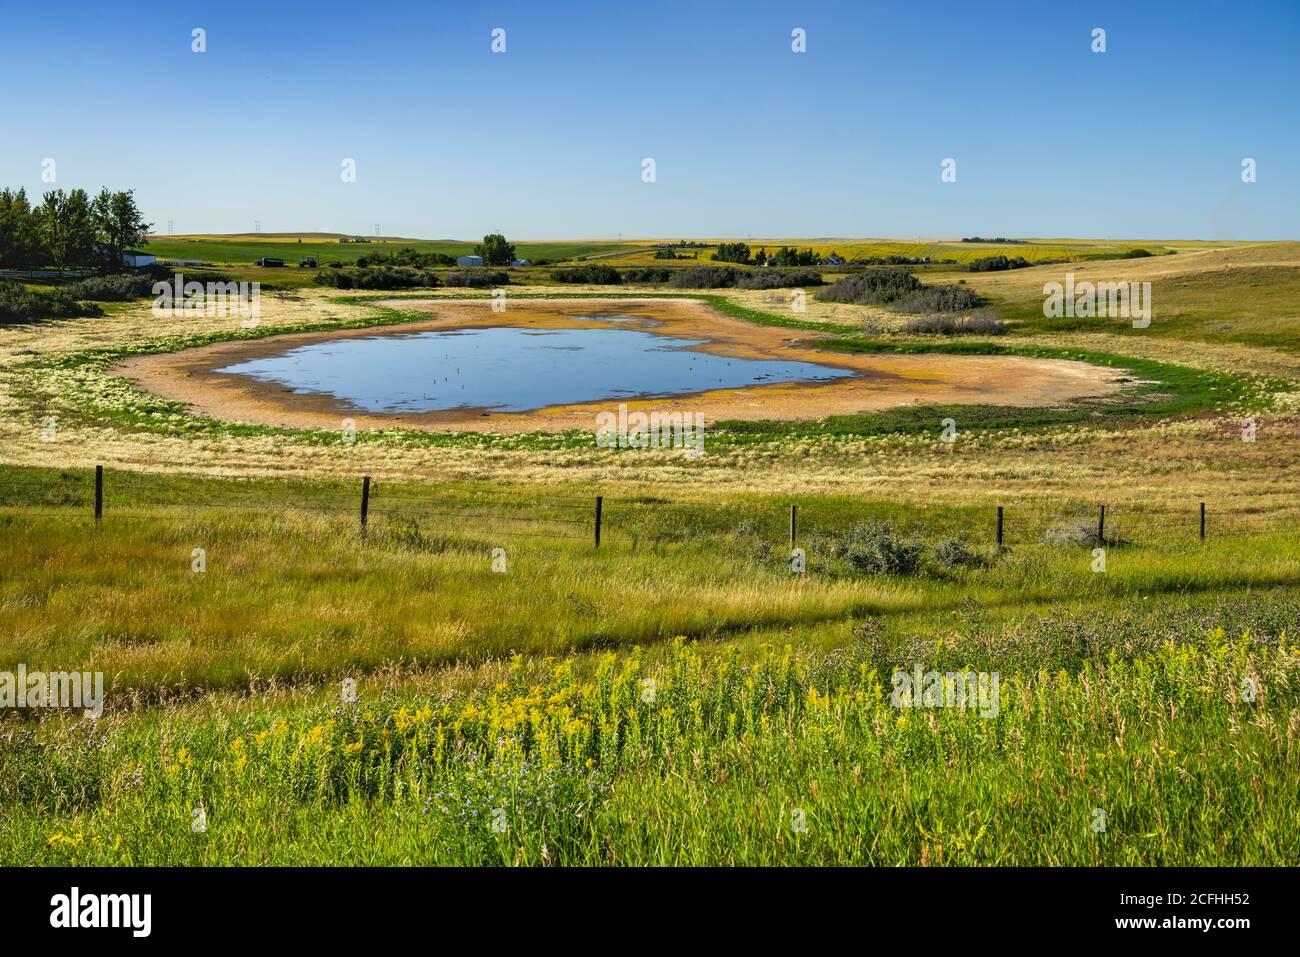 A small prairie pond in rural Saskatchewan, Canada. Stock Photo